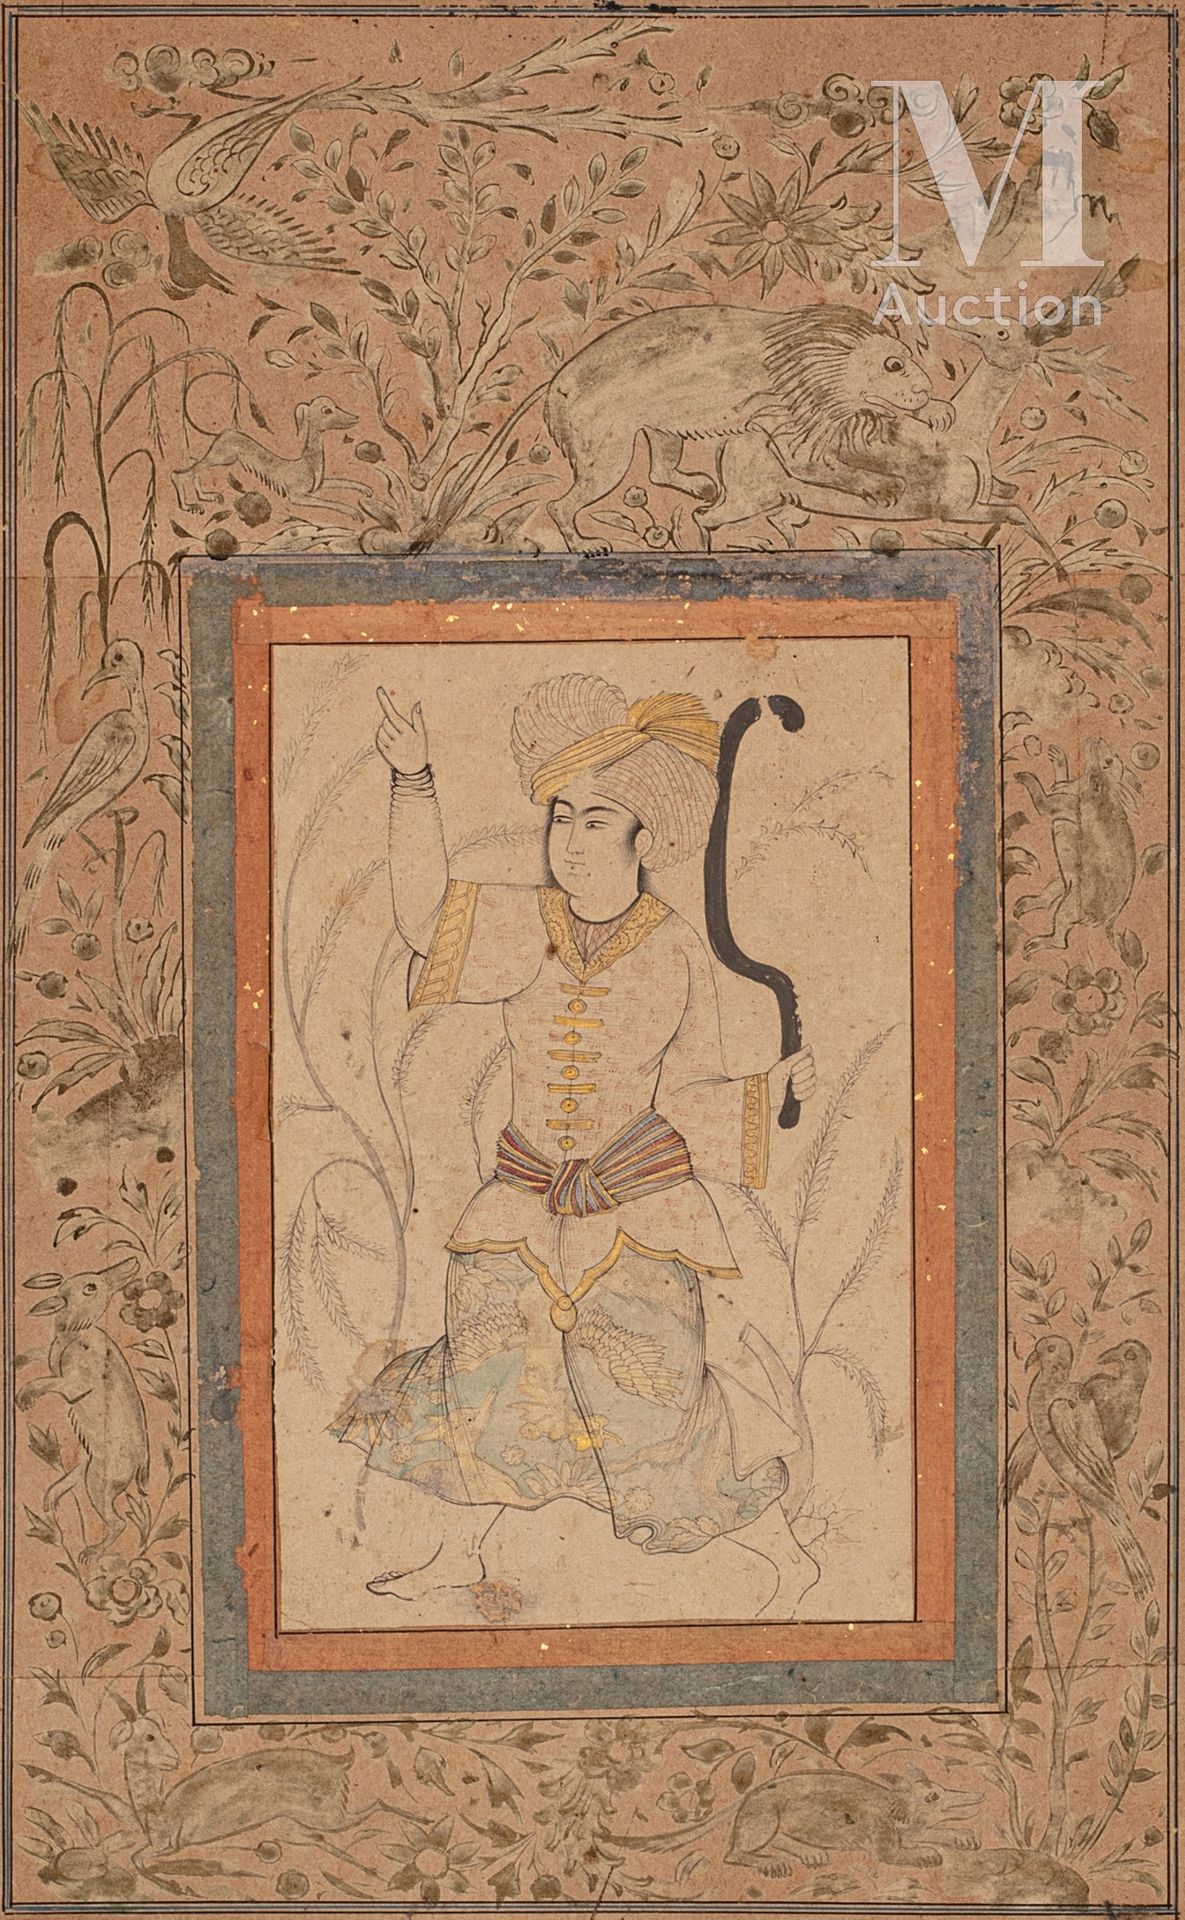 Le faucheur de blé 伊朗，卡扎尔艺术，19世纪

册页由水墨画组成，用金色加强，在赭石色背景上用钢印的边缘框住鸟、狮子和羚羊。

受萨法维时尚&hellip;